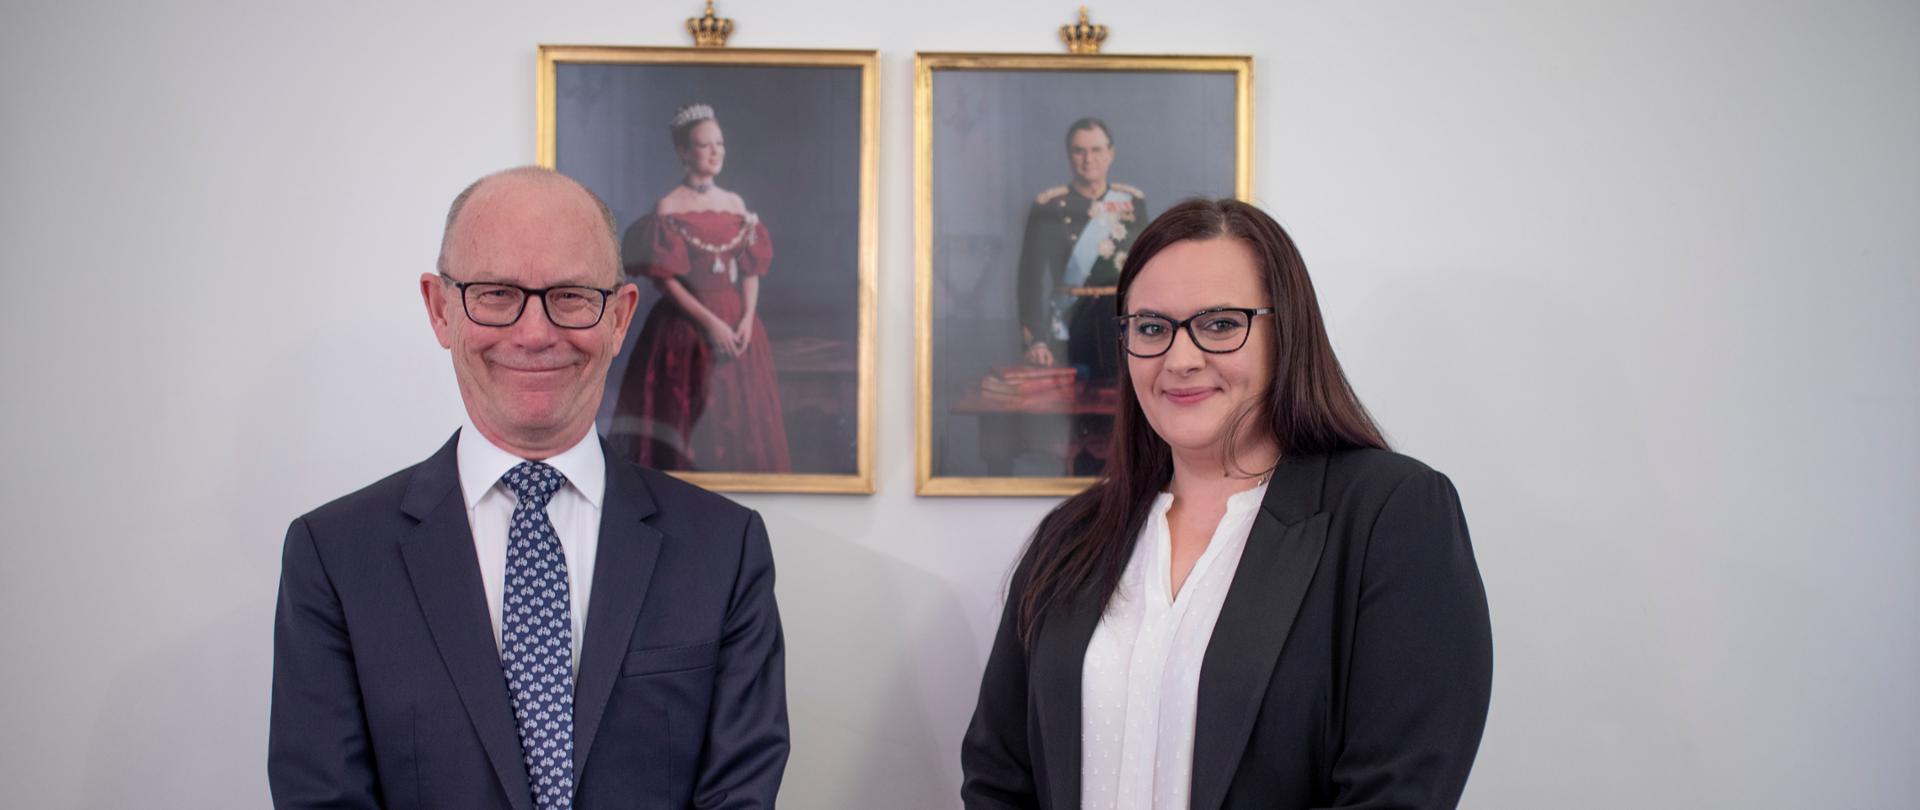 minister Małgorzata Jarosińska-Jedynak i ambasadorem Ole Egberg Mikkelsen stoją, za nimi na ścianie portrety duńskiej pary królewskiej